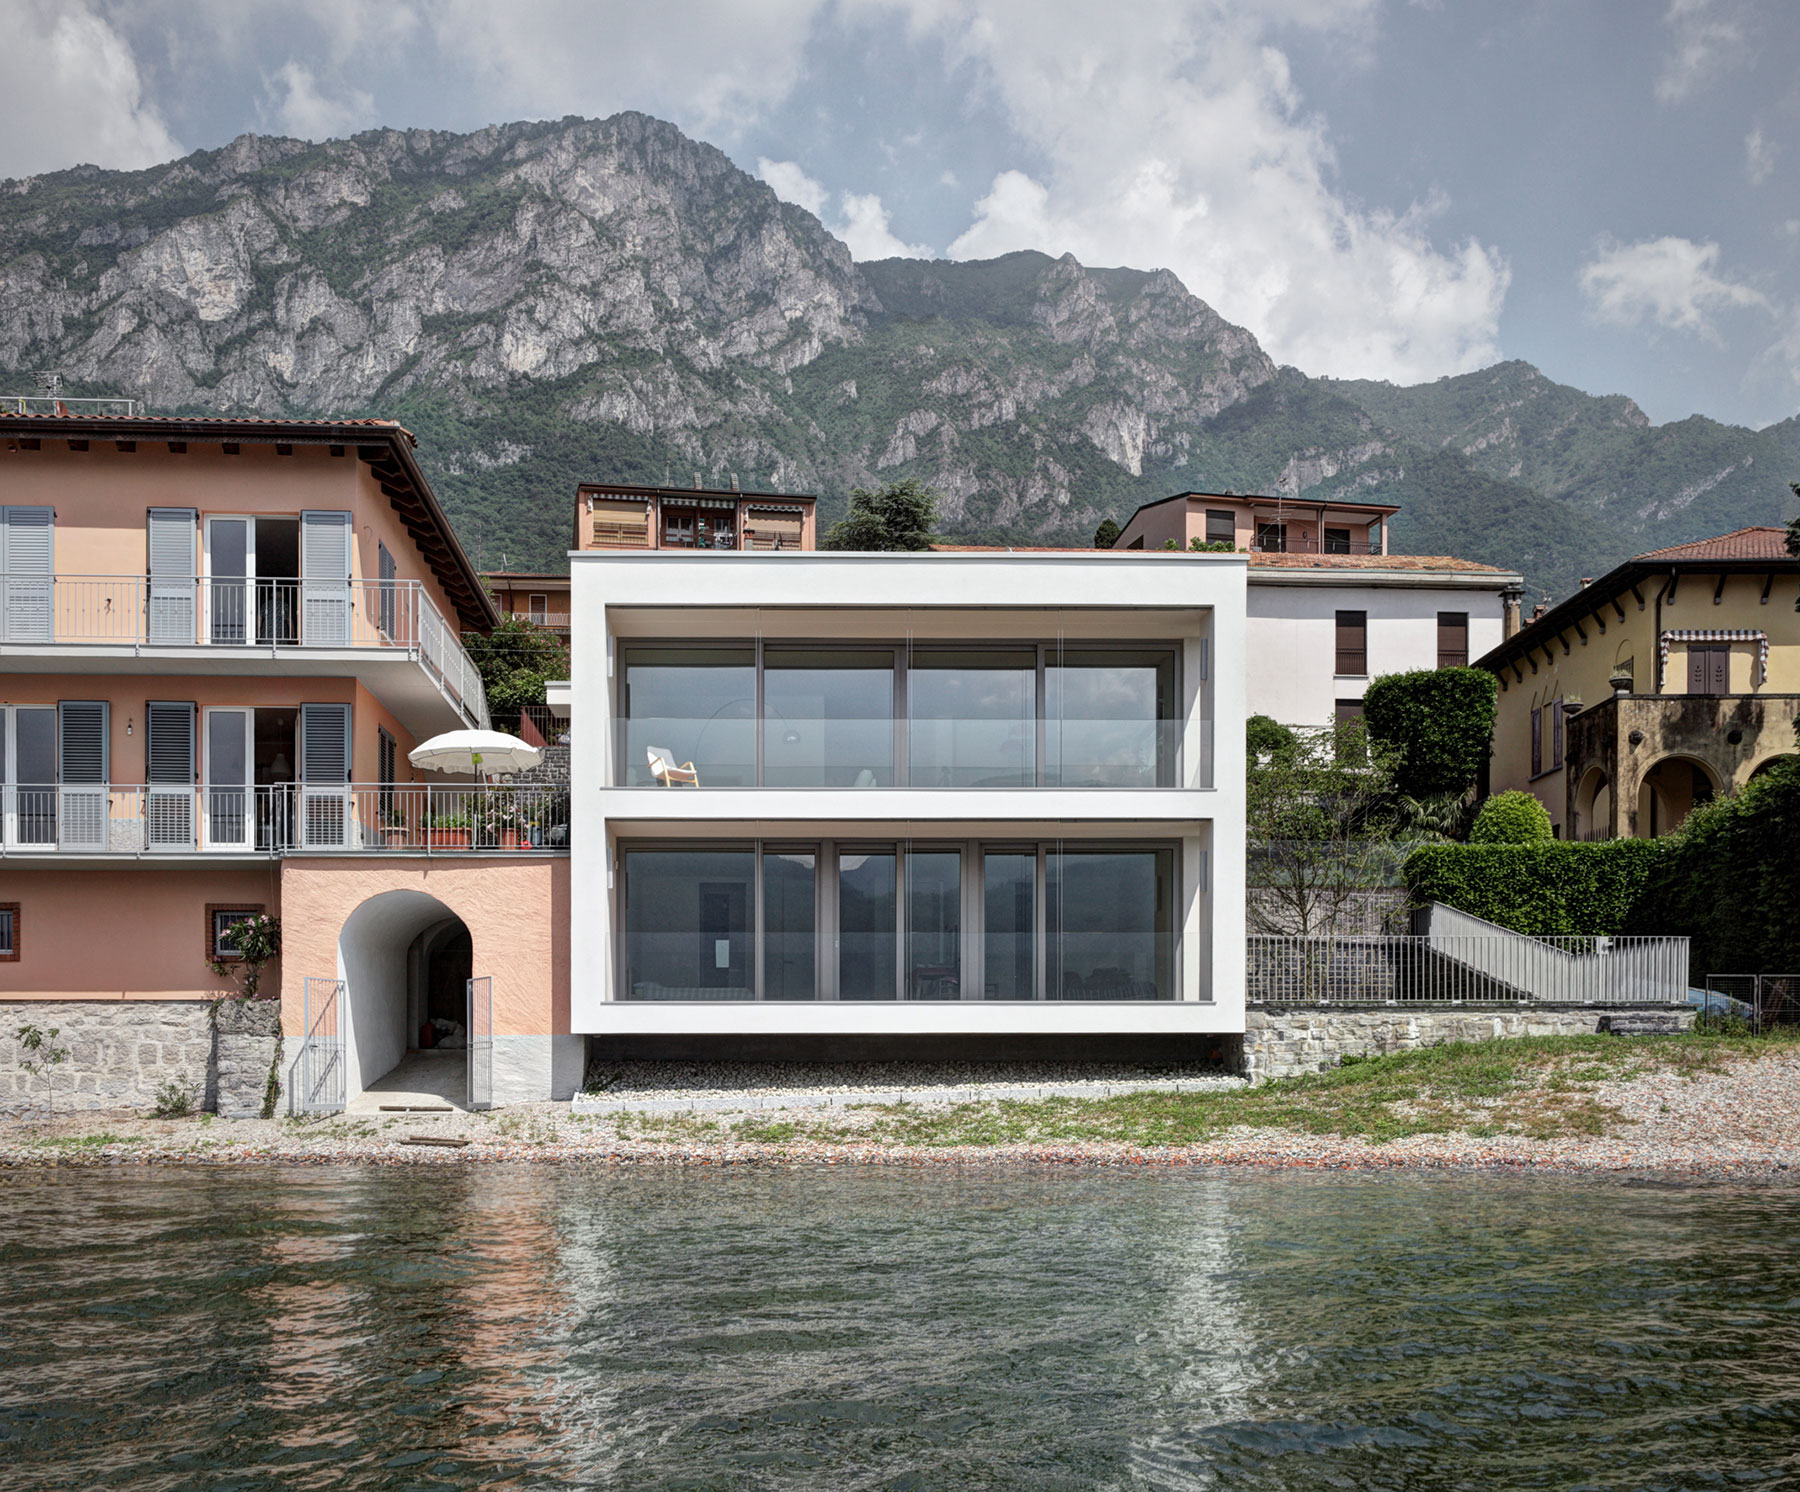 Kompletně přestavěný dům na břehu jezera Como je nevtíravý, integrovaný do okolní zástavby, přesto moderní. Velkoformátová okna dominují na západní straně této krychlové budovy.